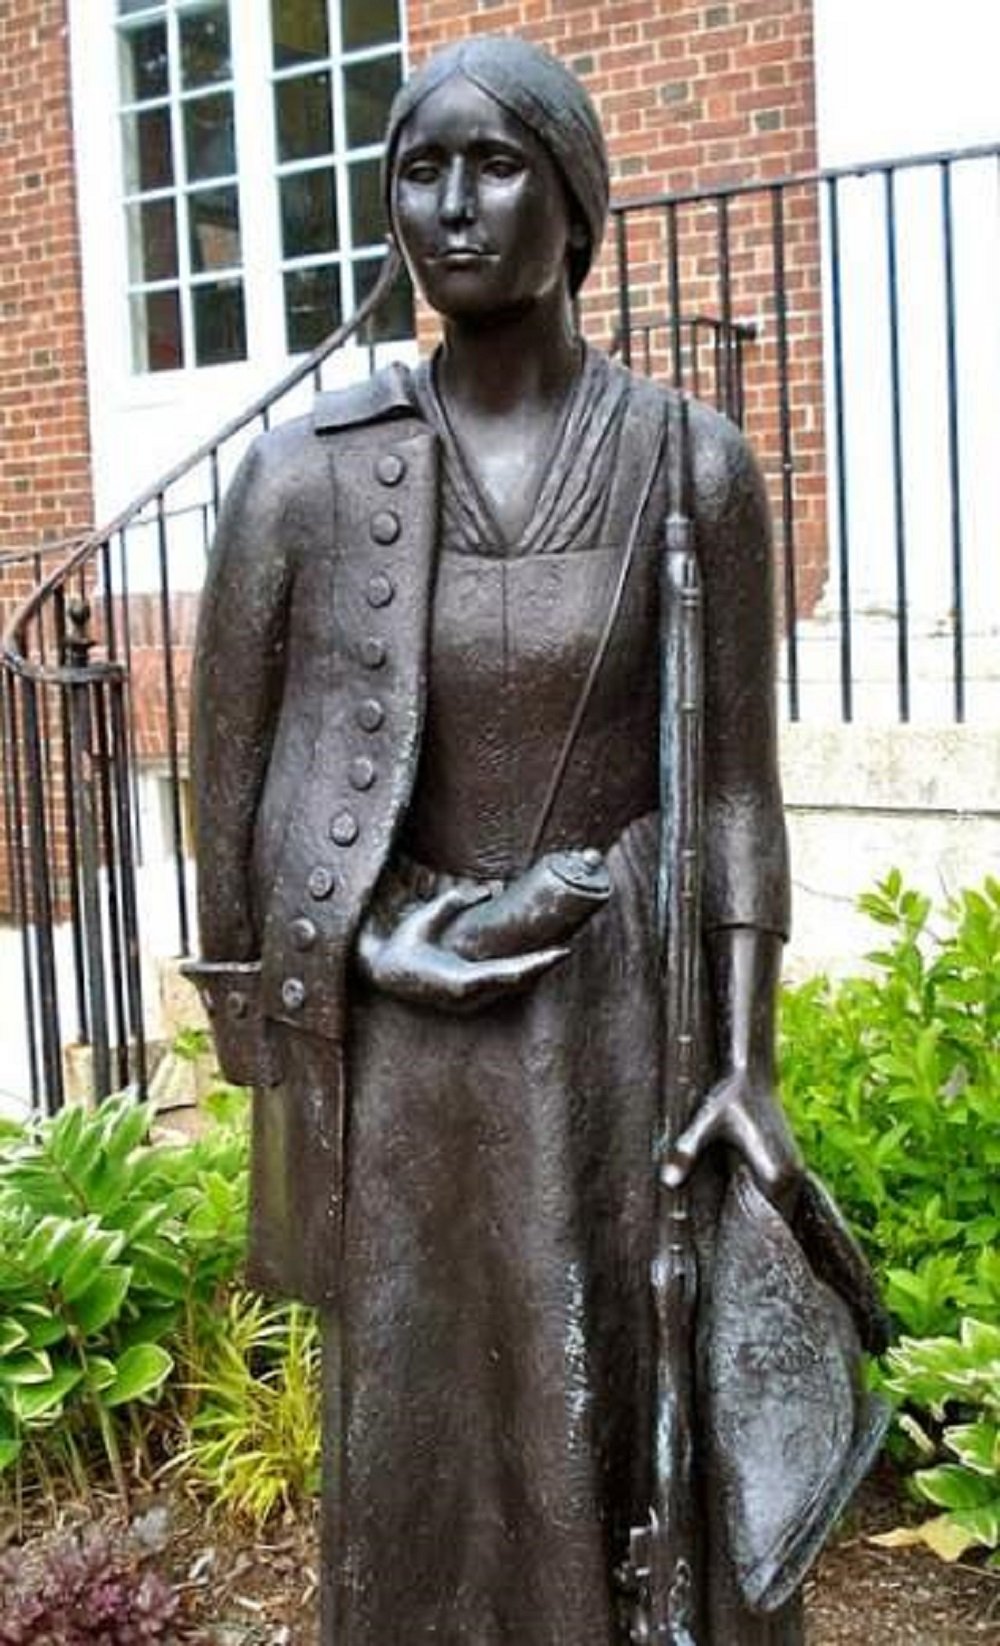 Statue of Deborah Sampson